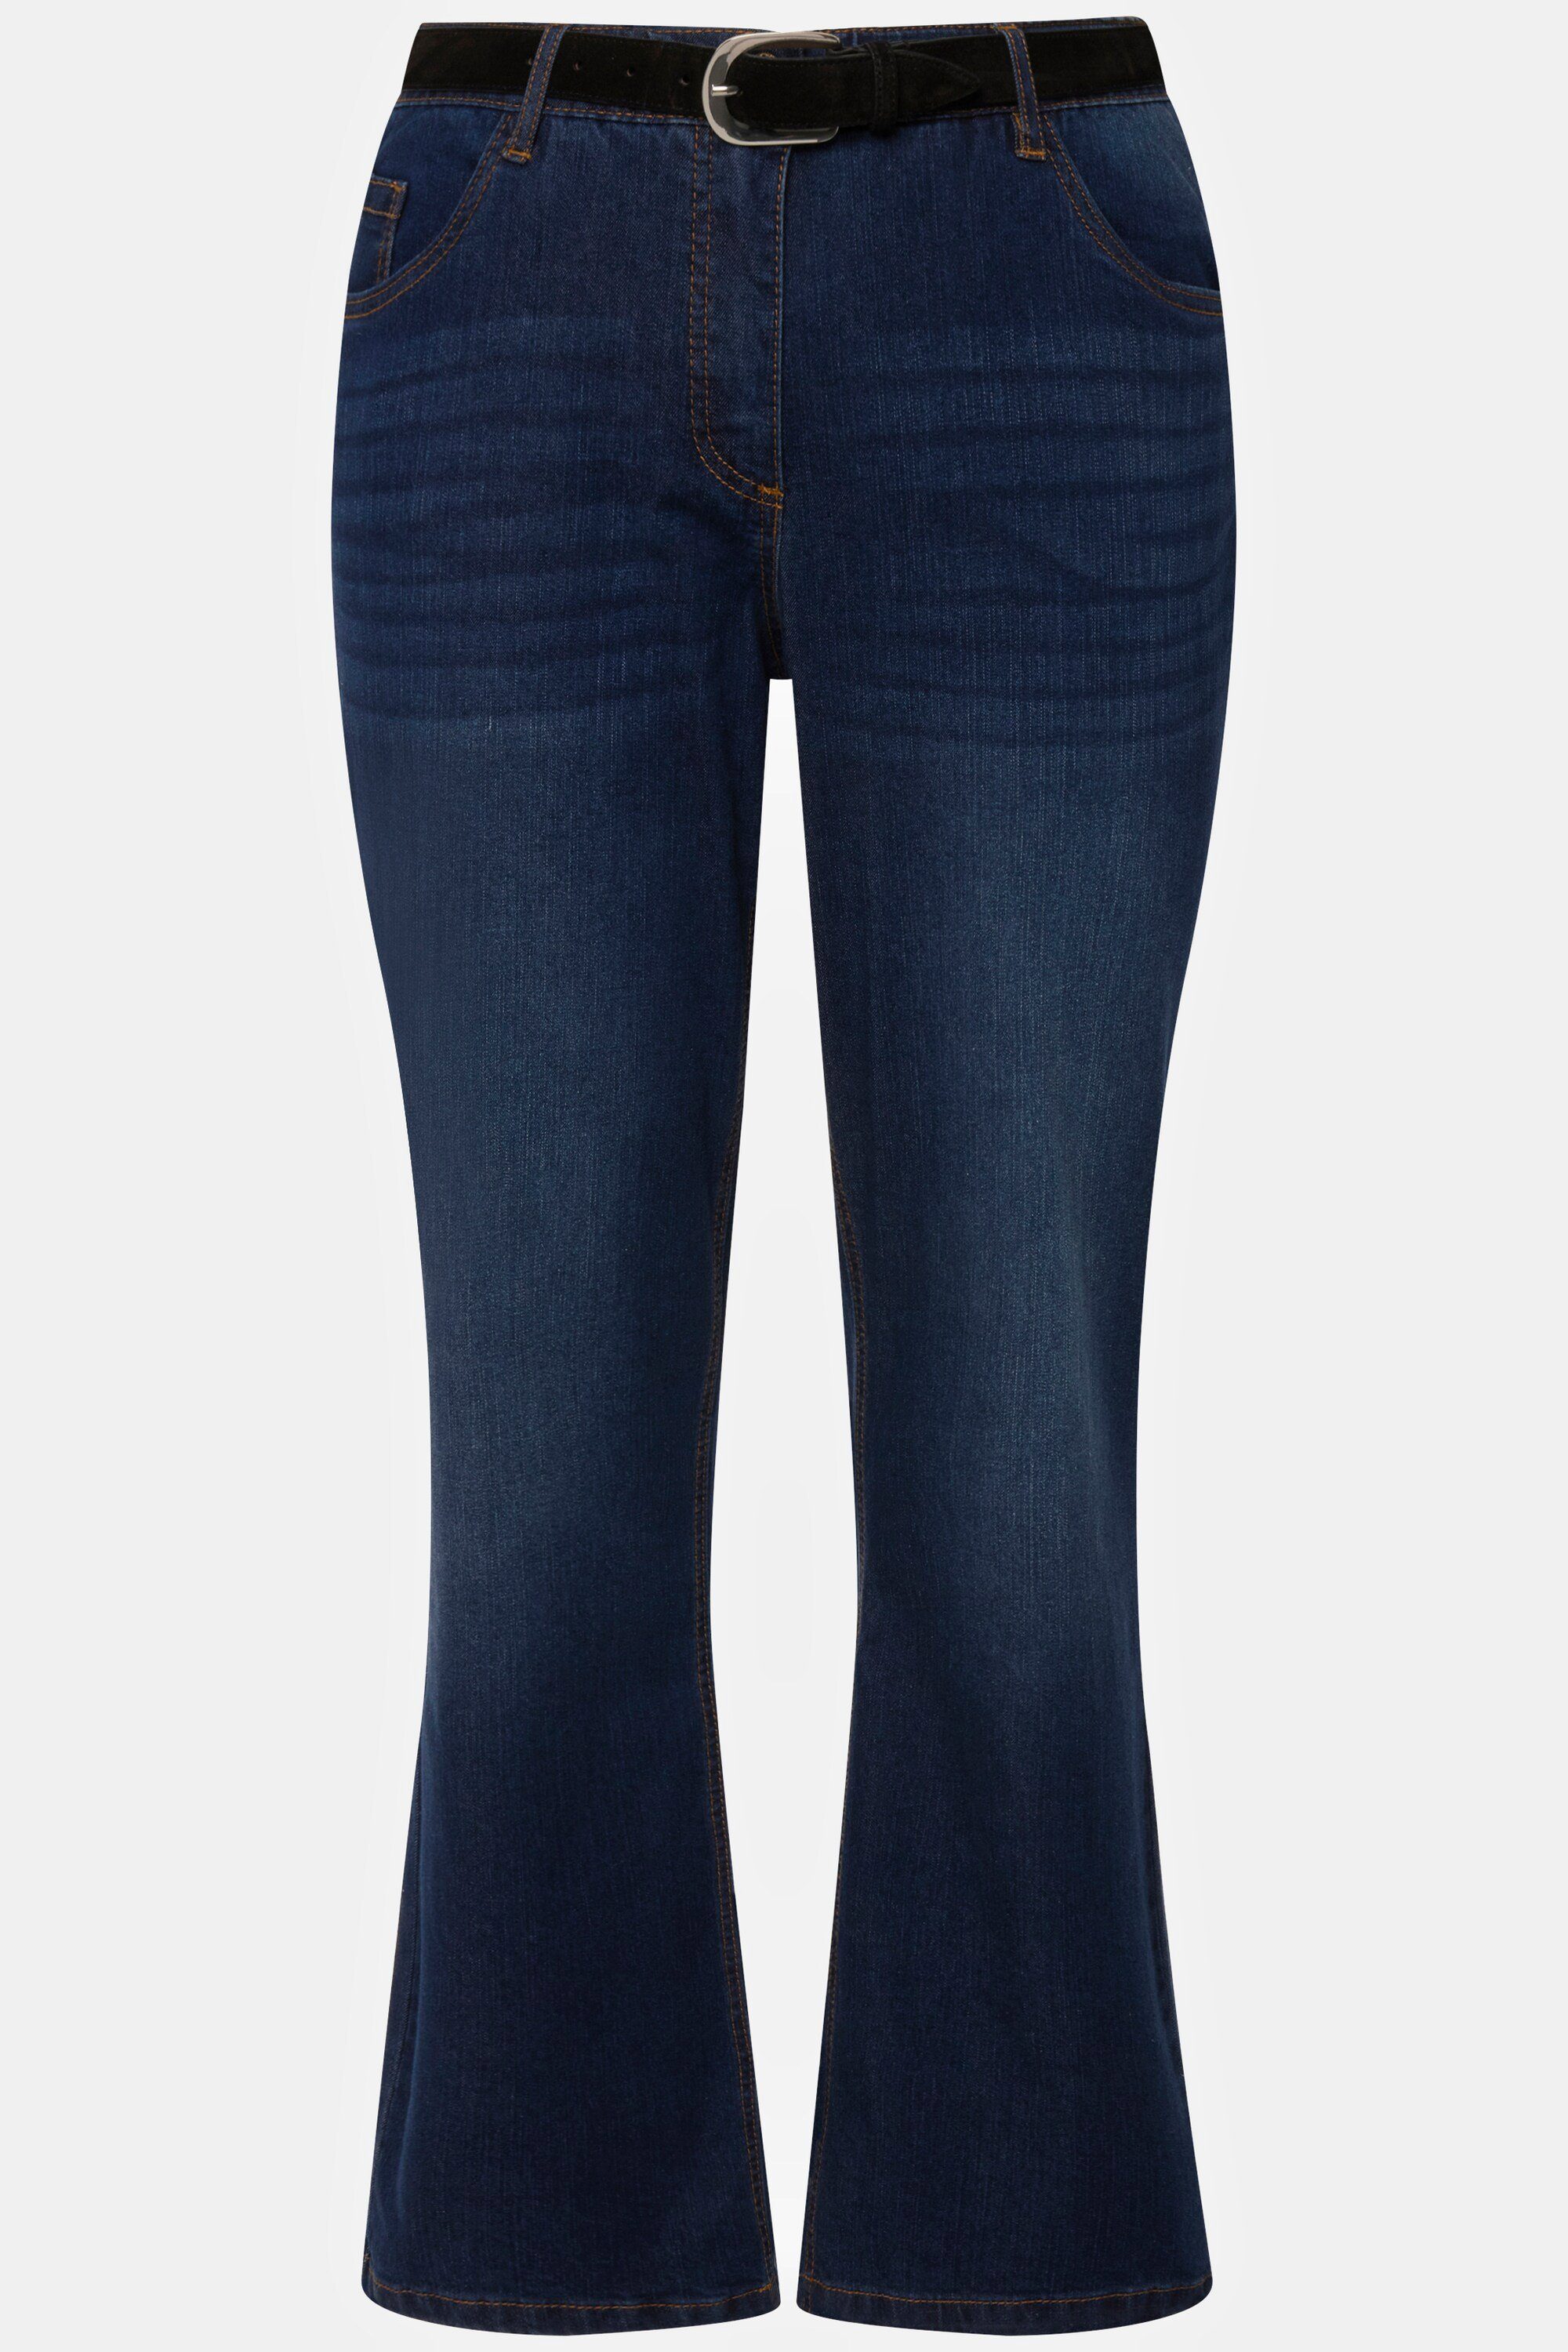 denim Komfortbund 5-Pocket-Form Jeans Popken blue gerade Ulla Mandy Funktionshose